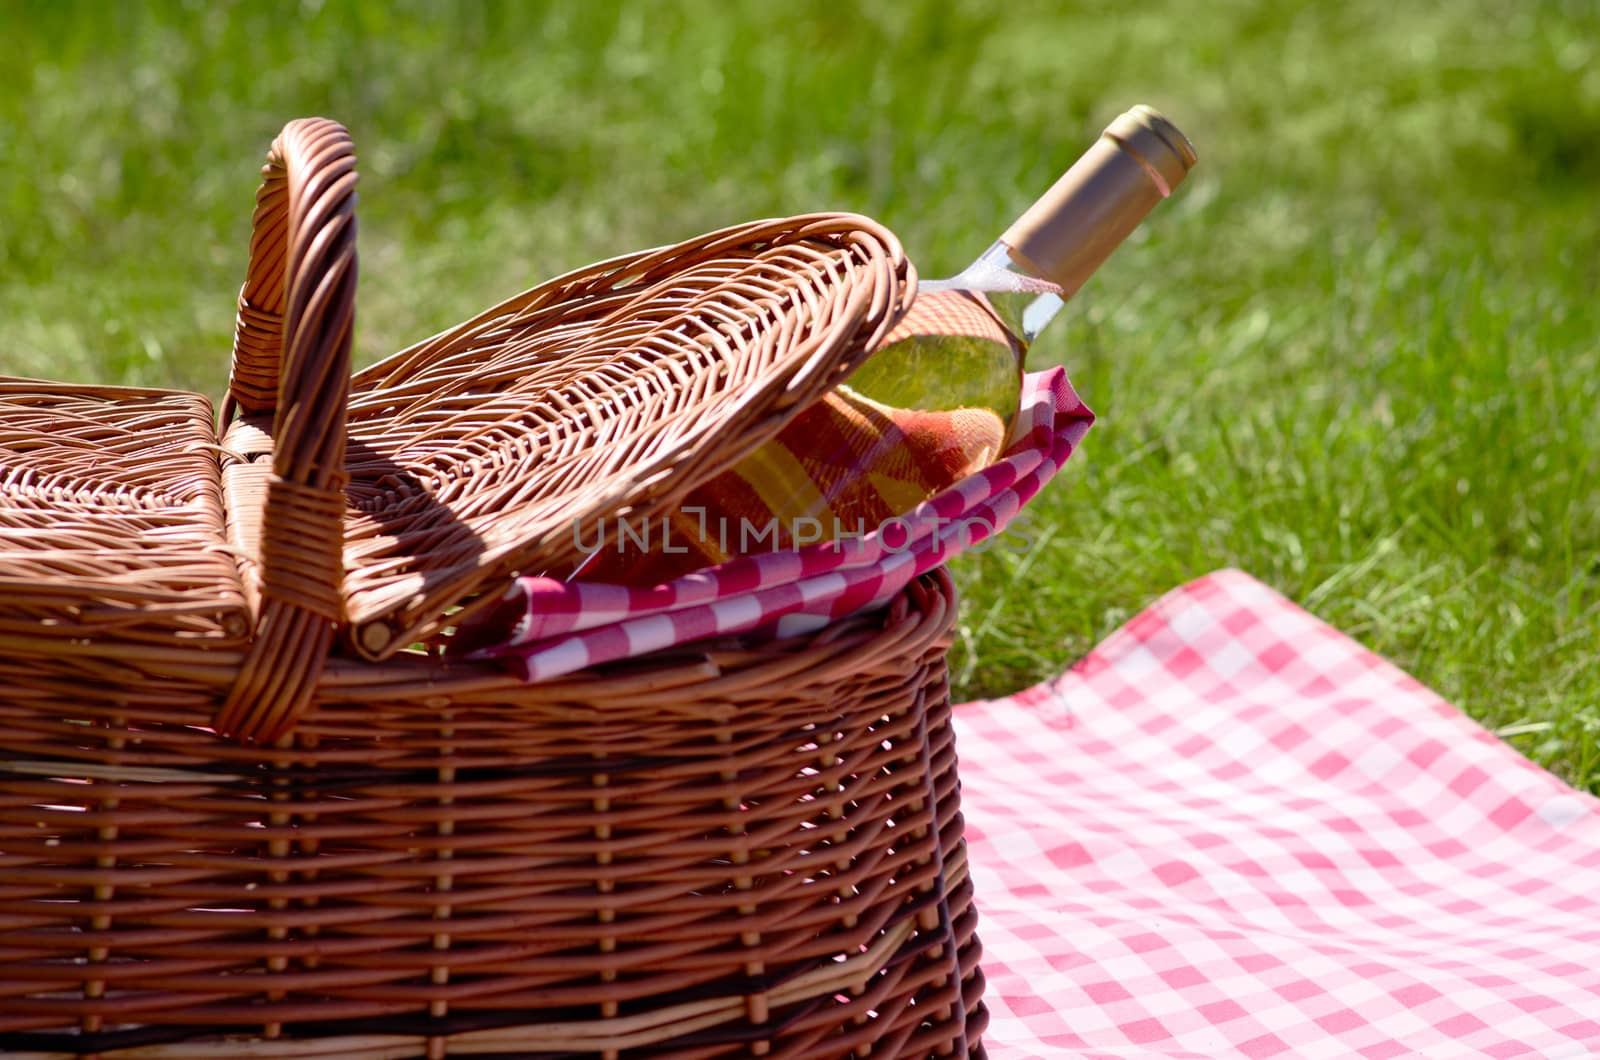 Wine bottle in picnic basket